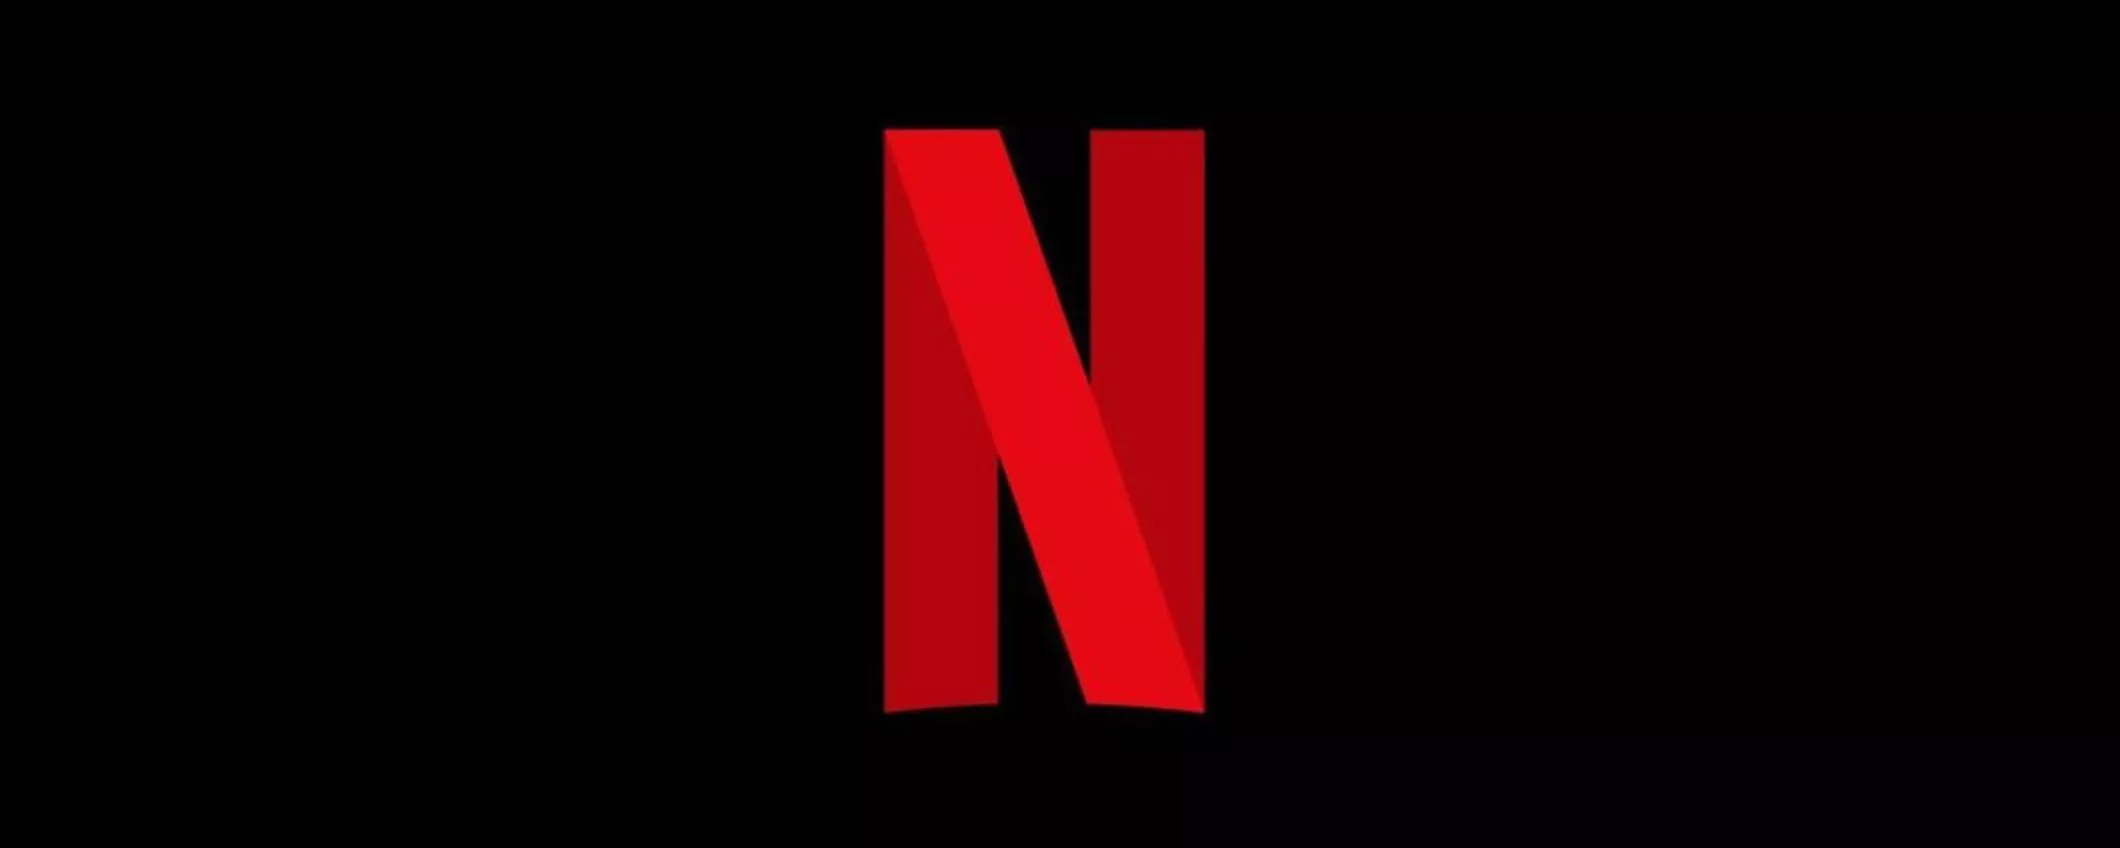 Netflix rivoluziona l'homepage: più spazio a trailer e descrizioni